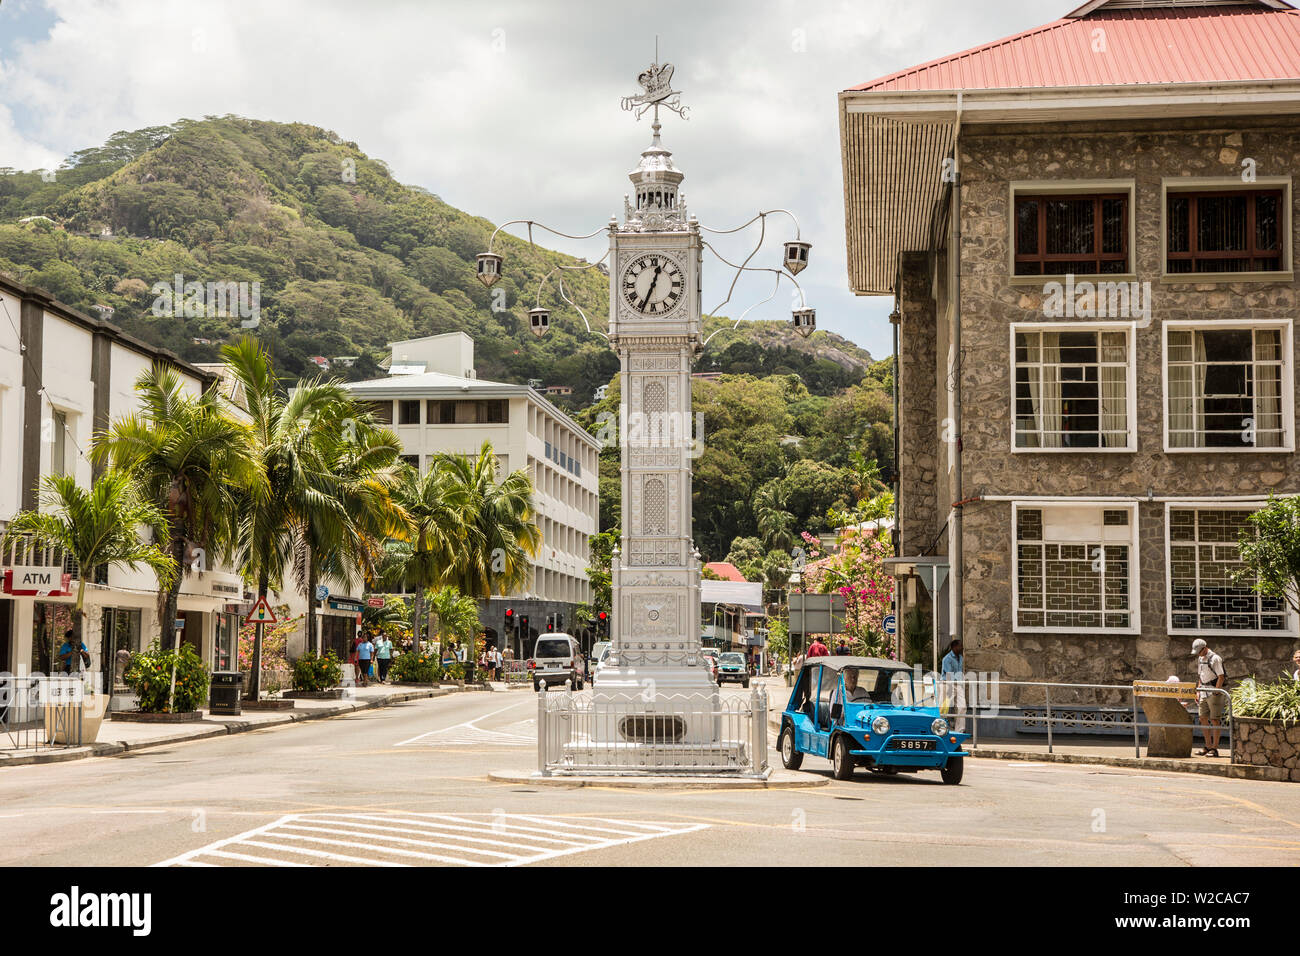 La torre del reloj, Victoria, Mahé, Seychelles Foto de stock